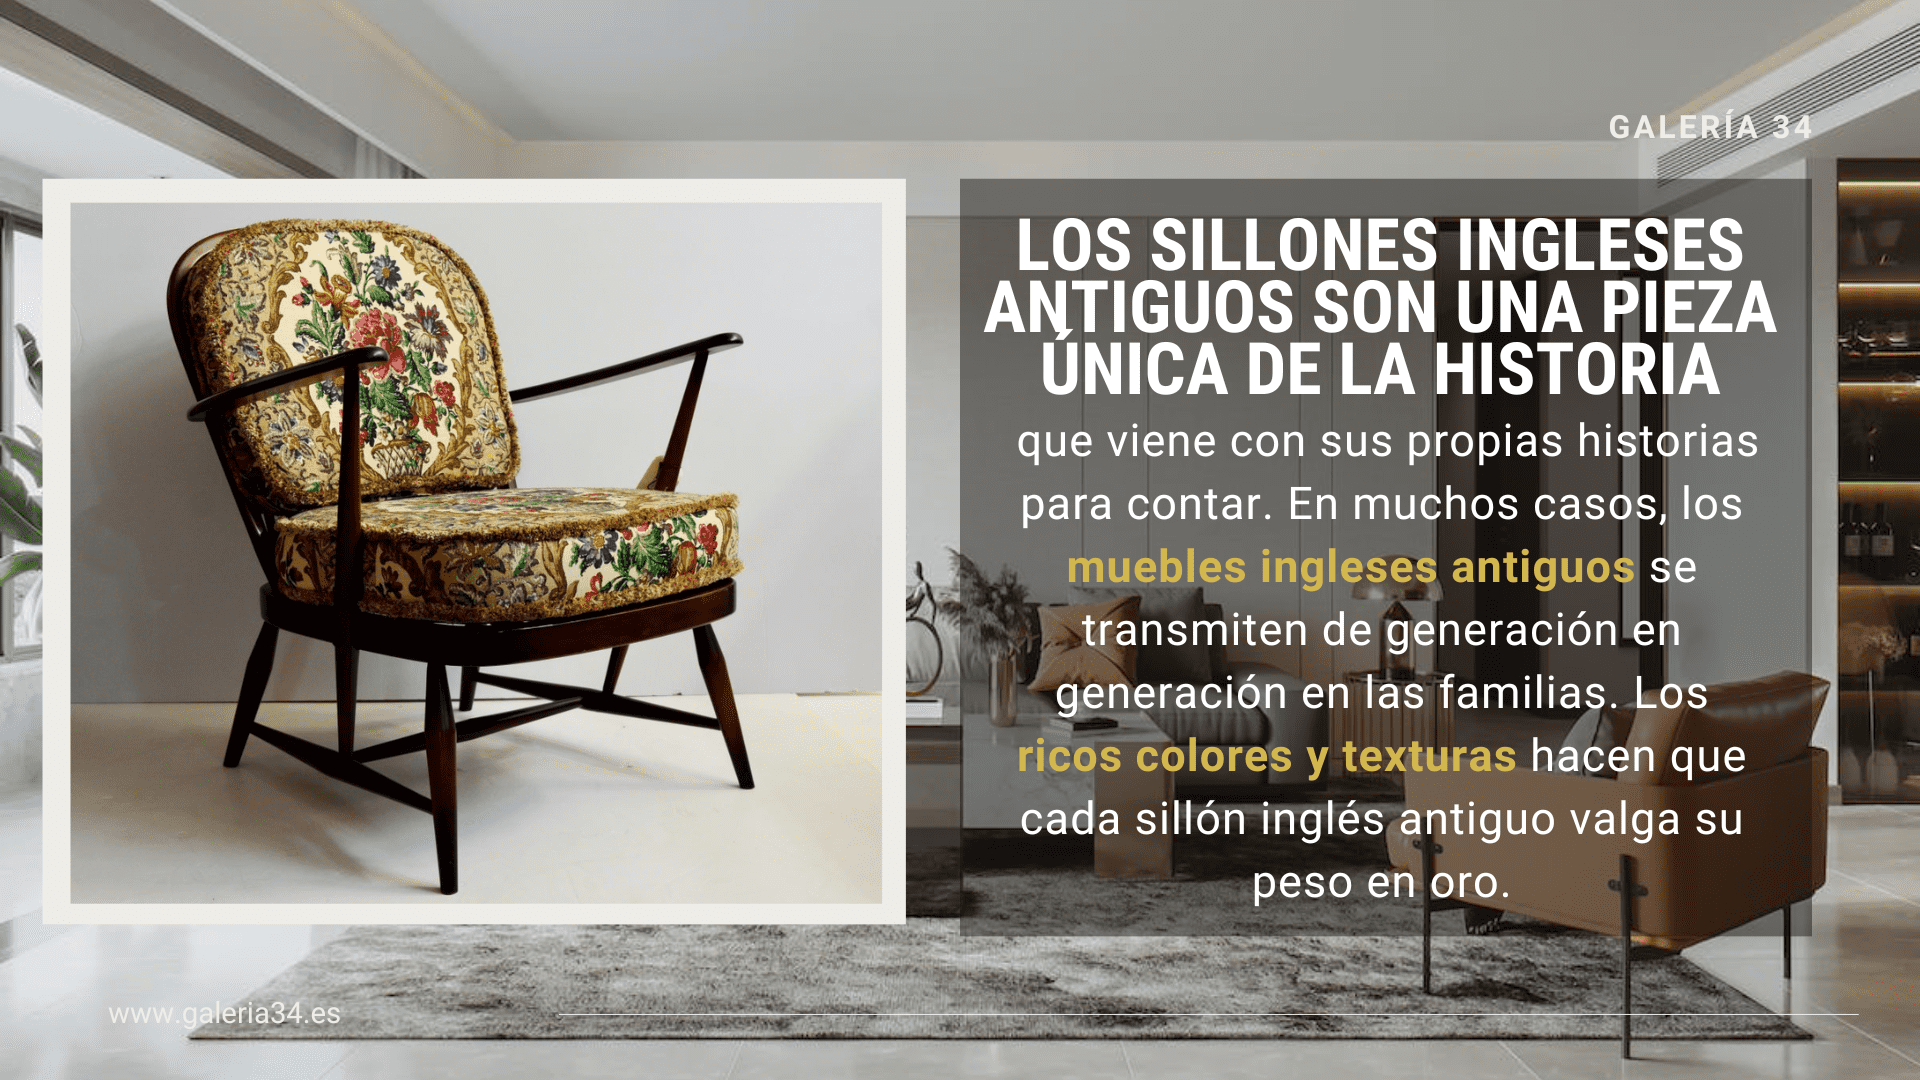 Los sillones ingleses antiguos son una pieza única de la historia